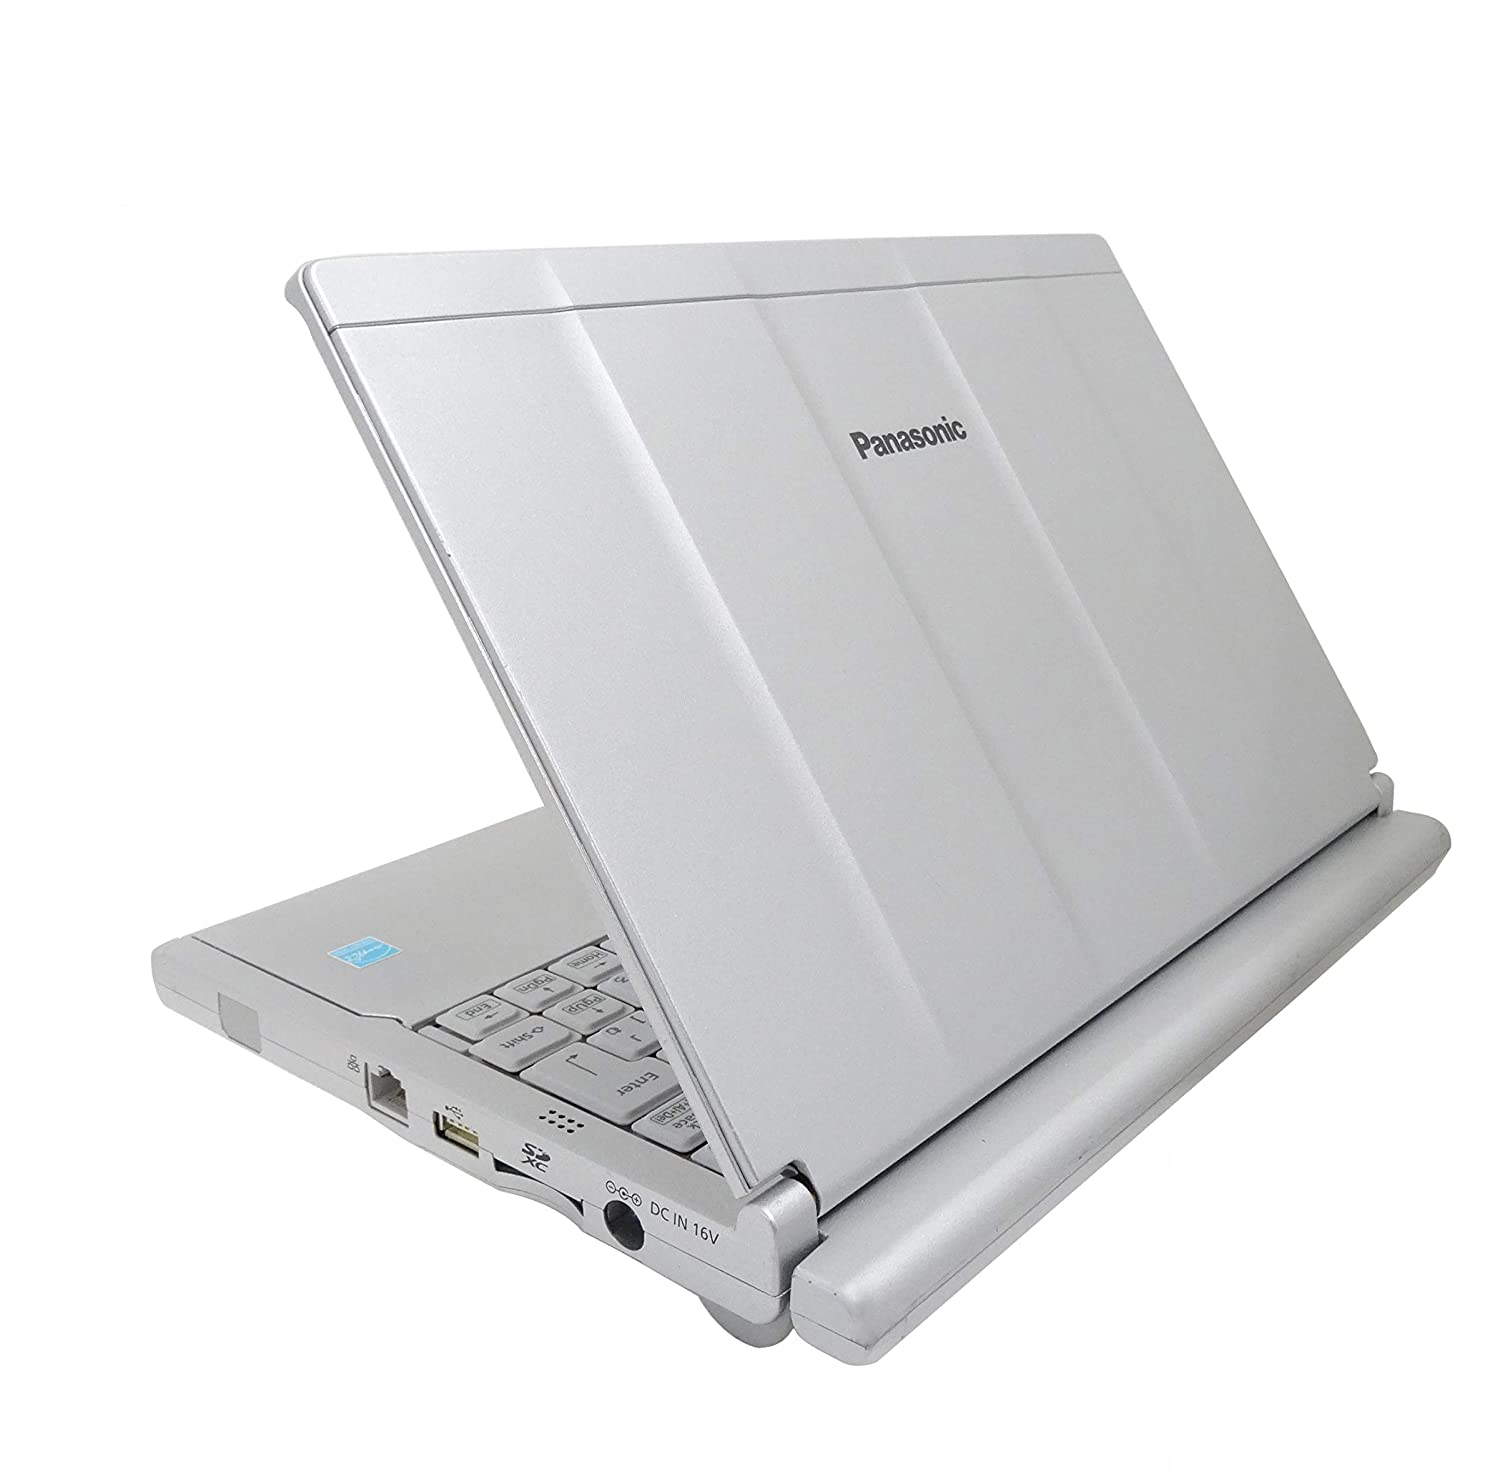 Panasonic レッツノート NX4 Core i3搭載 12インチ 中古ノートパソコン